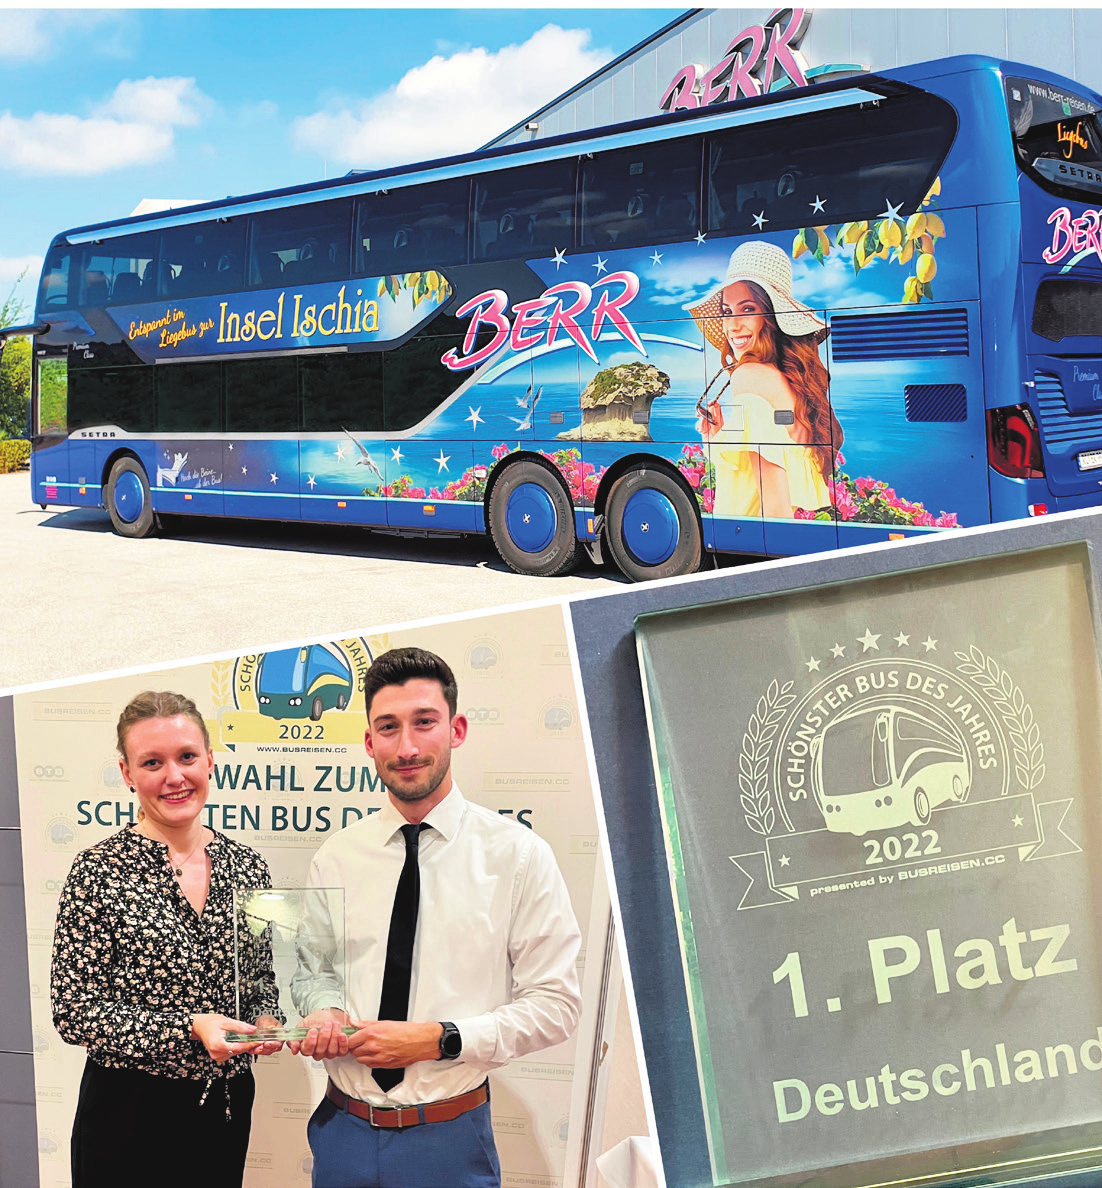 Der Berr-Liegebus - Prämiert als der ,,Schönste Bus Deutschlands 2022“